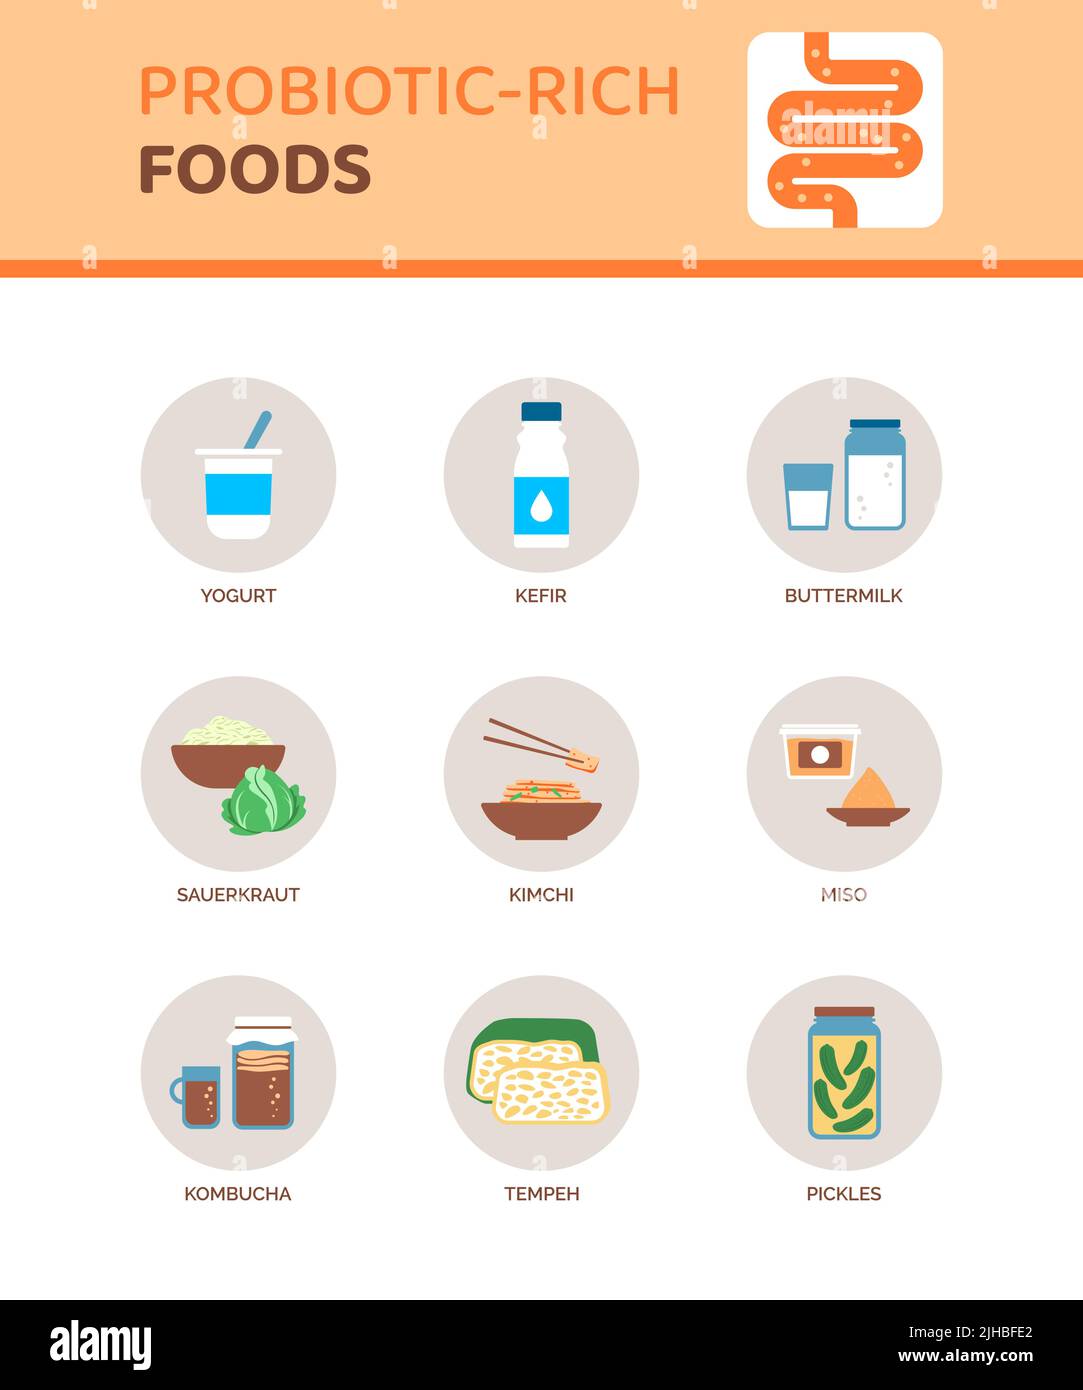 Alimentation riche en probiotiques pour une meilleure santé digestive, infographie avec icônes Illustration de Vecteur